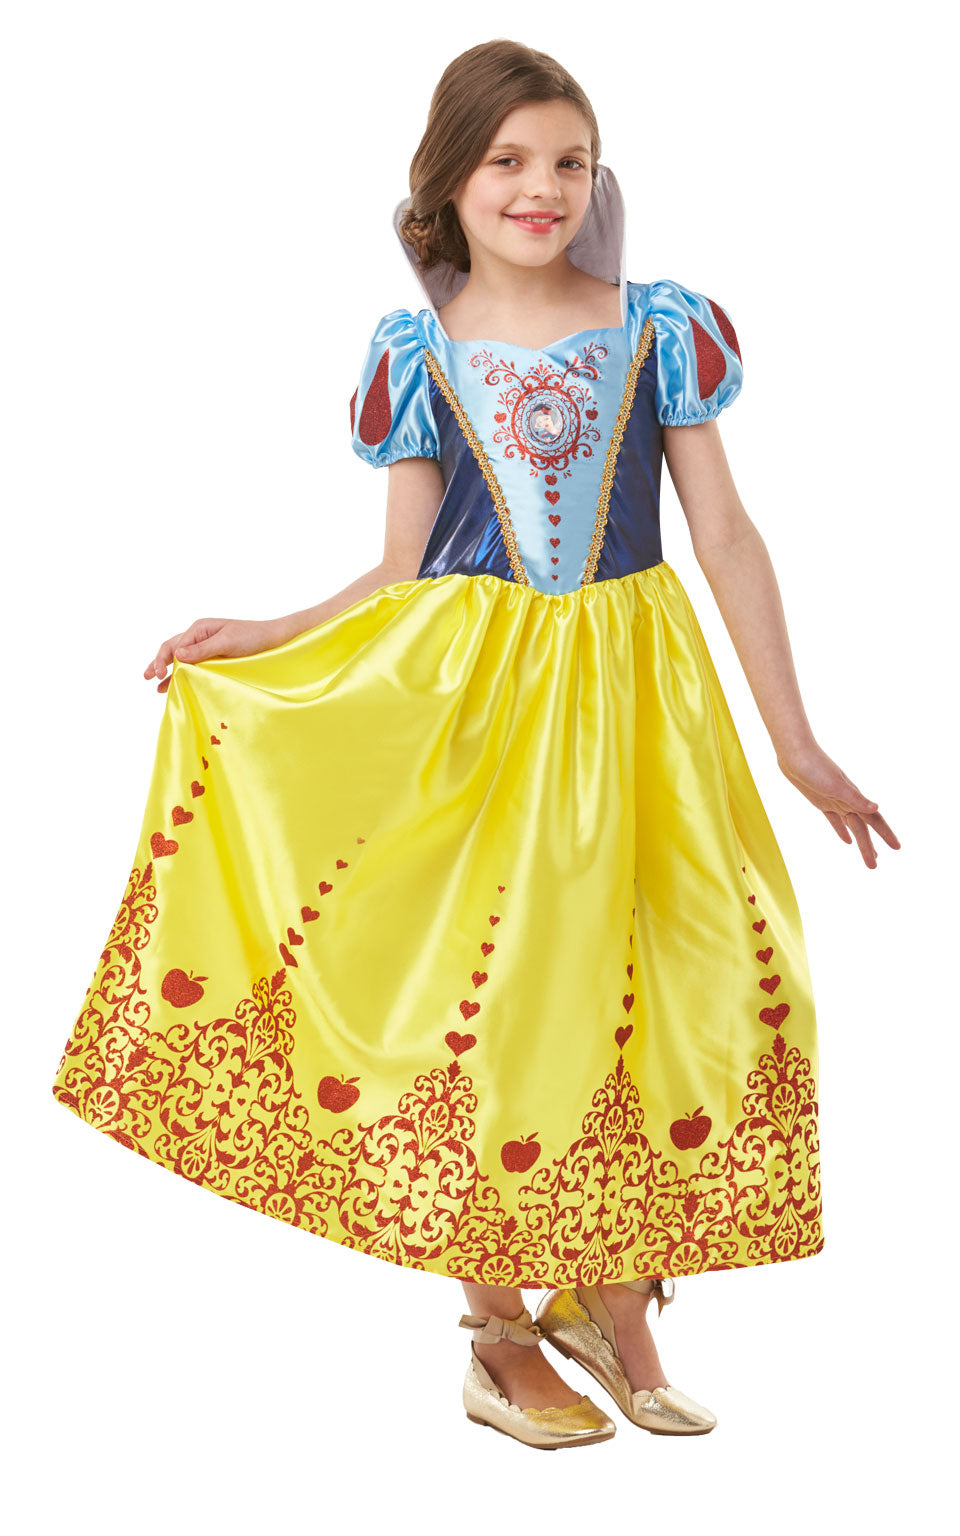 Gem Princess Snow White Disney outfit.